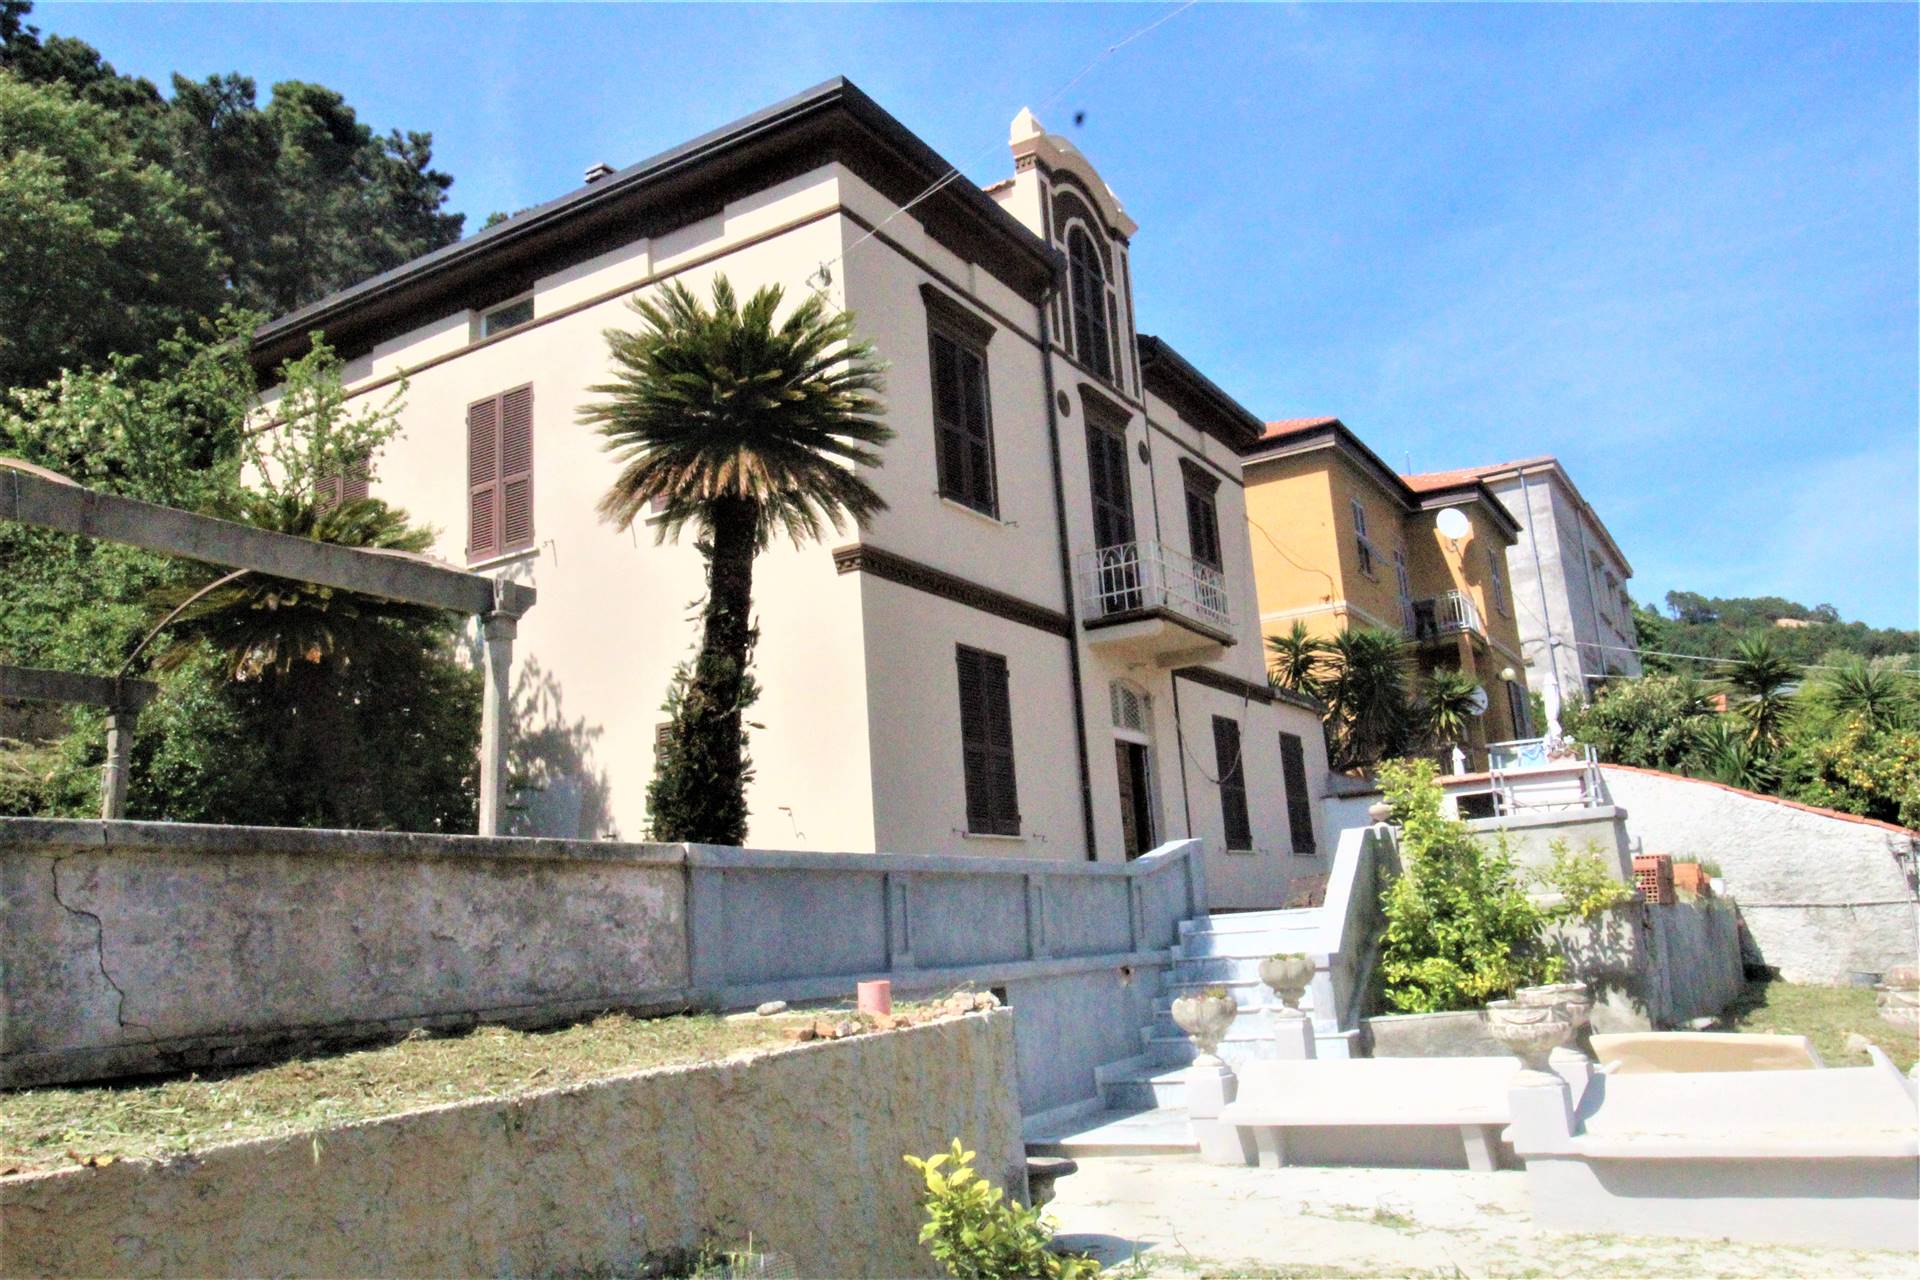 Villa in vendita a La Spezia, 12 locali, zona Località: RUFFINO, prezzo € 800.000 | PortaleAgenzieImmobiliari.it